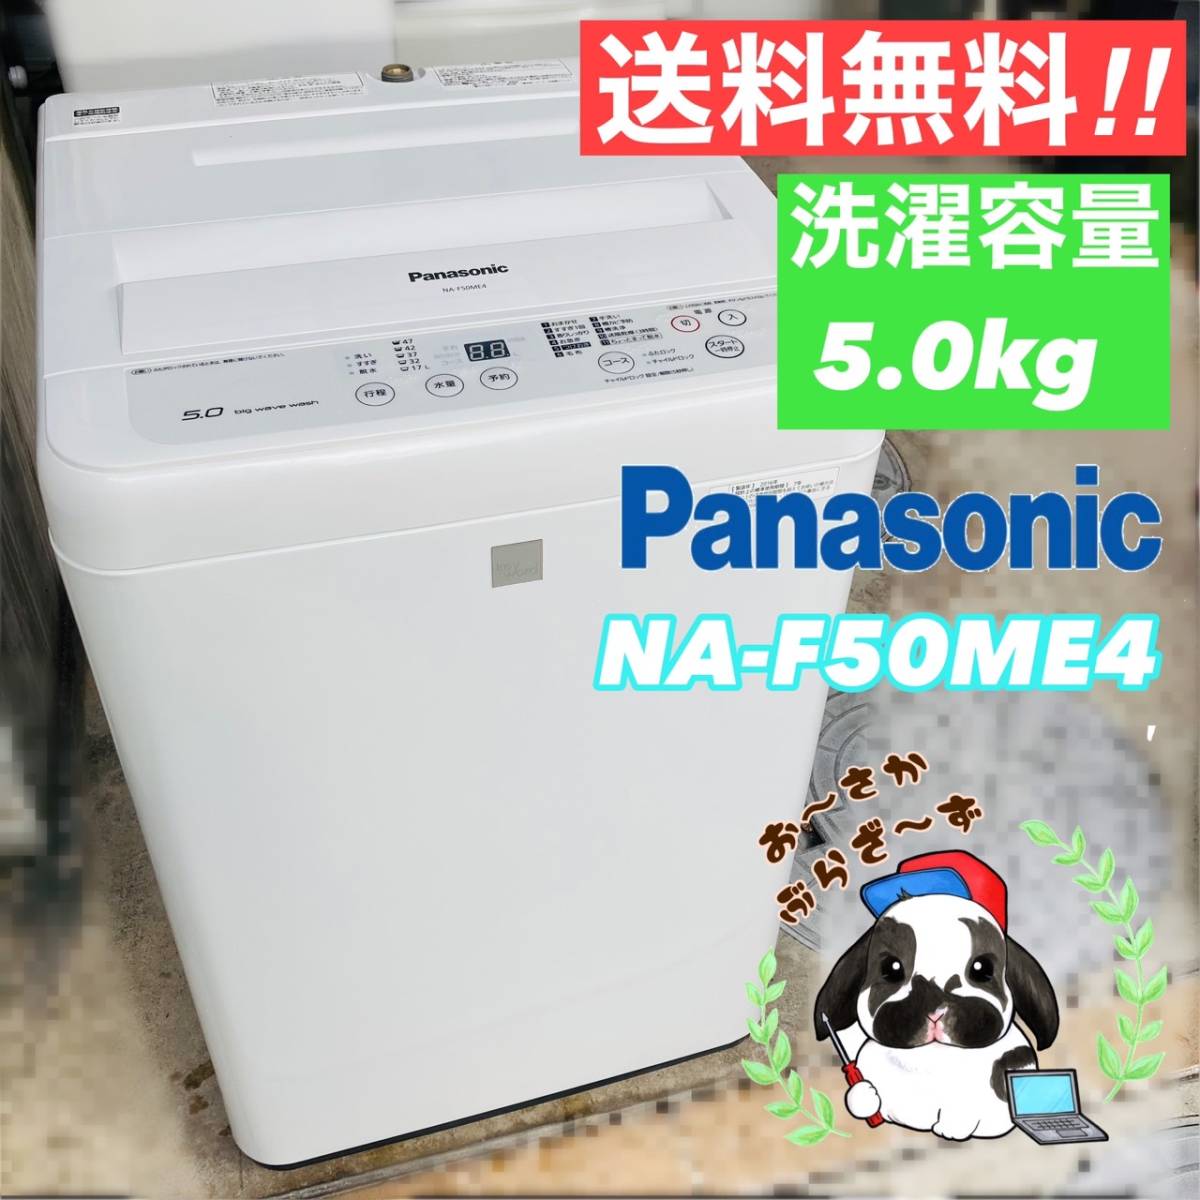 結婚祝い 送料無料!!Panasonic パナソニック 5.0kg 全自動洗濯機 NA ...